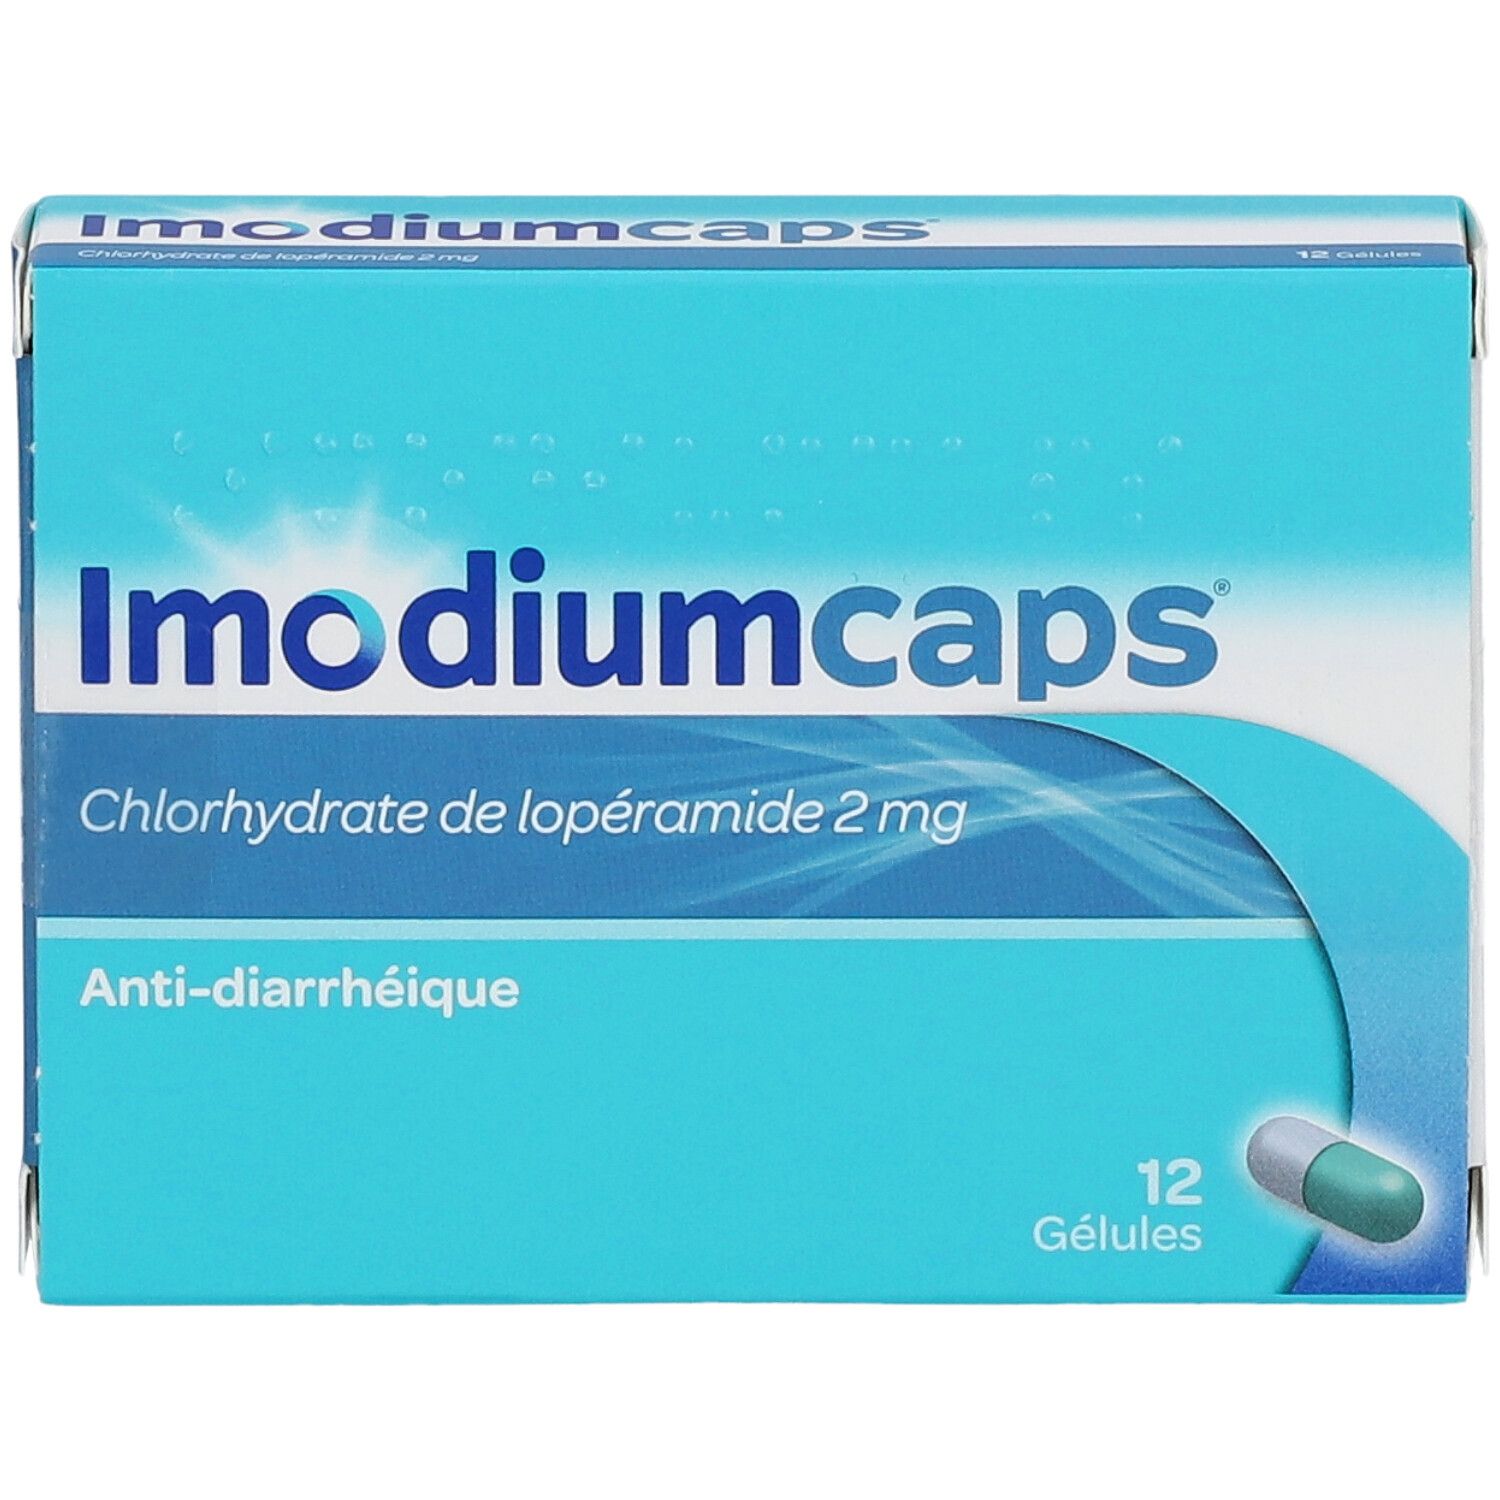 Imodiumcaps®